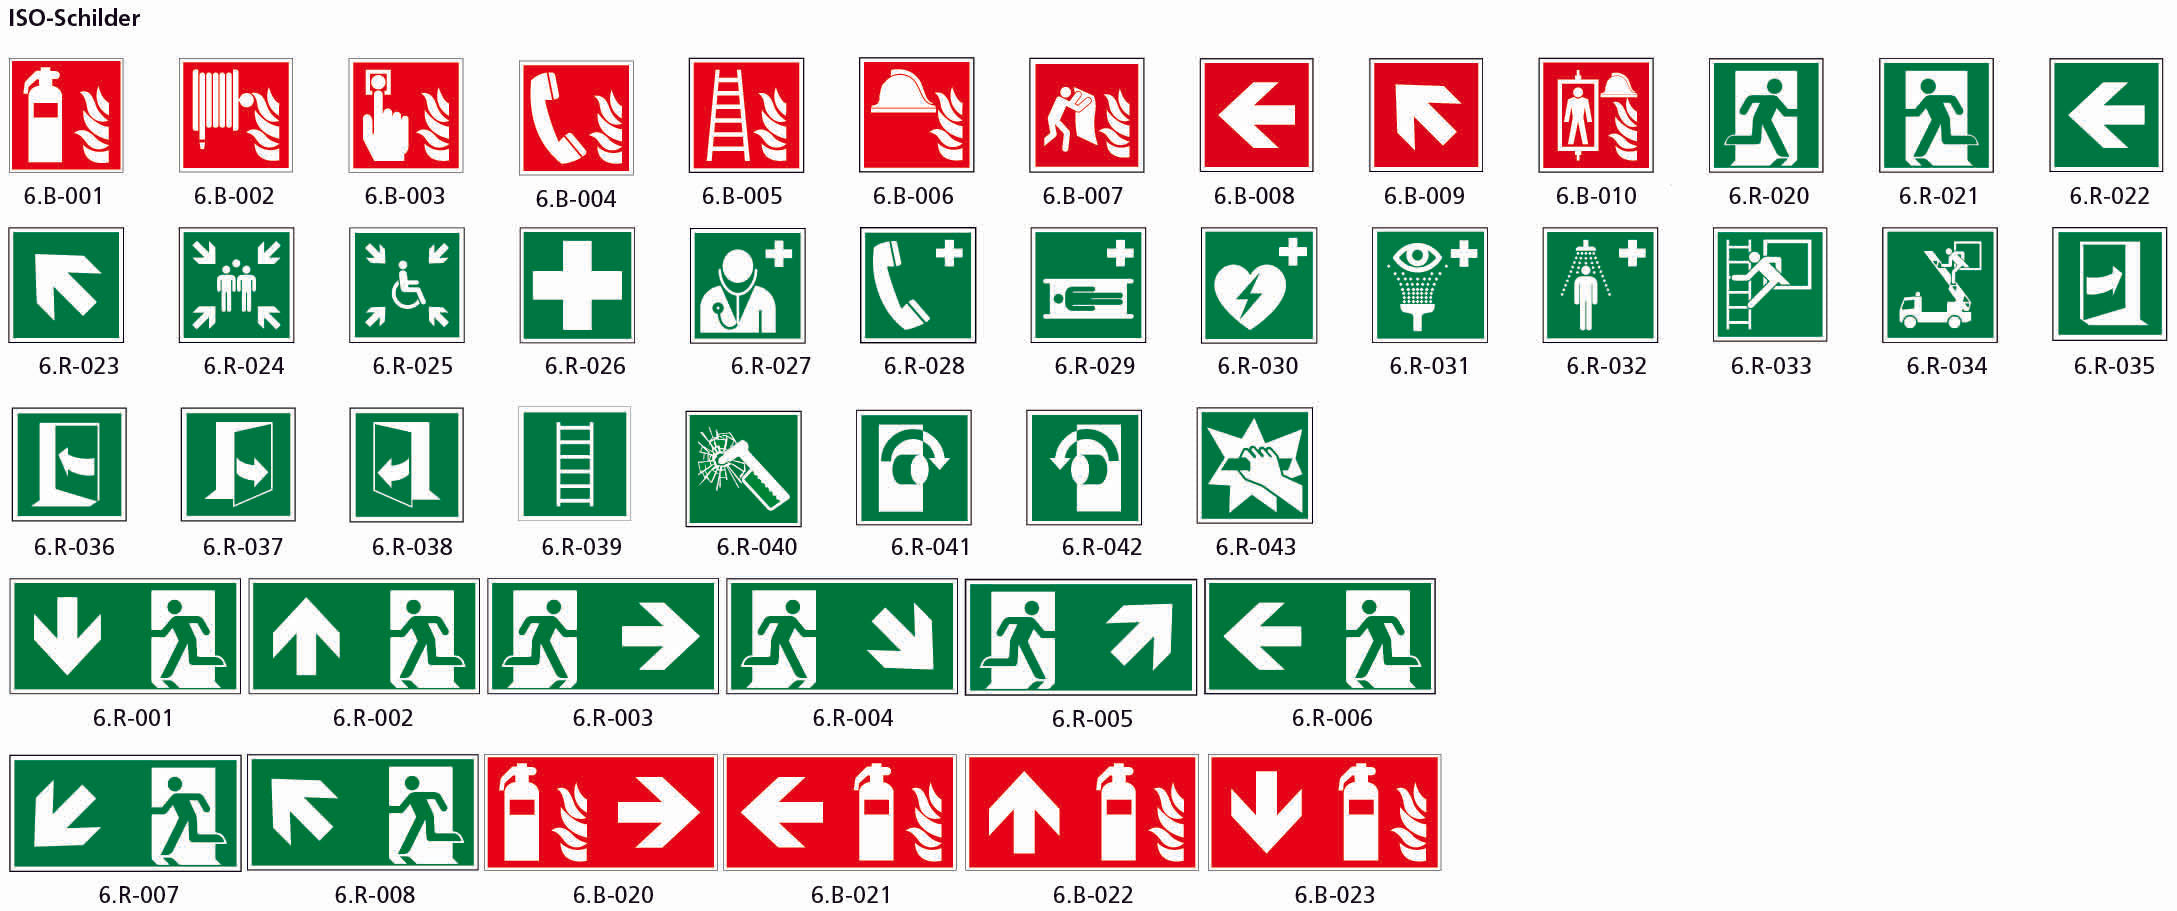 Fahnenschild doppelseitig, Rettungs- und Brandschutzzeichen, nachleuchtend, PM, 200 x 200 mm, gemäss Logobibliothek